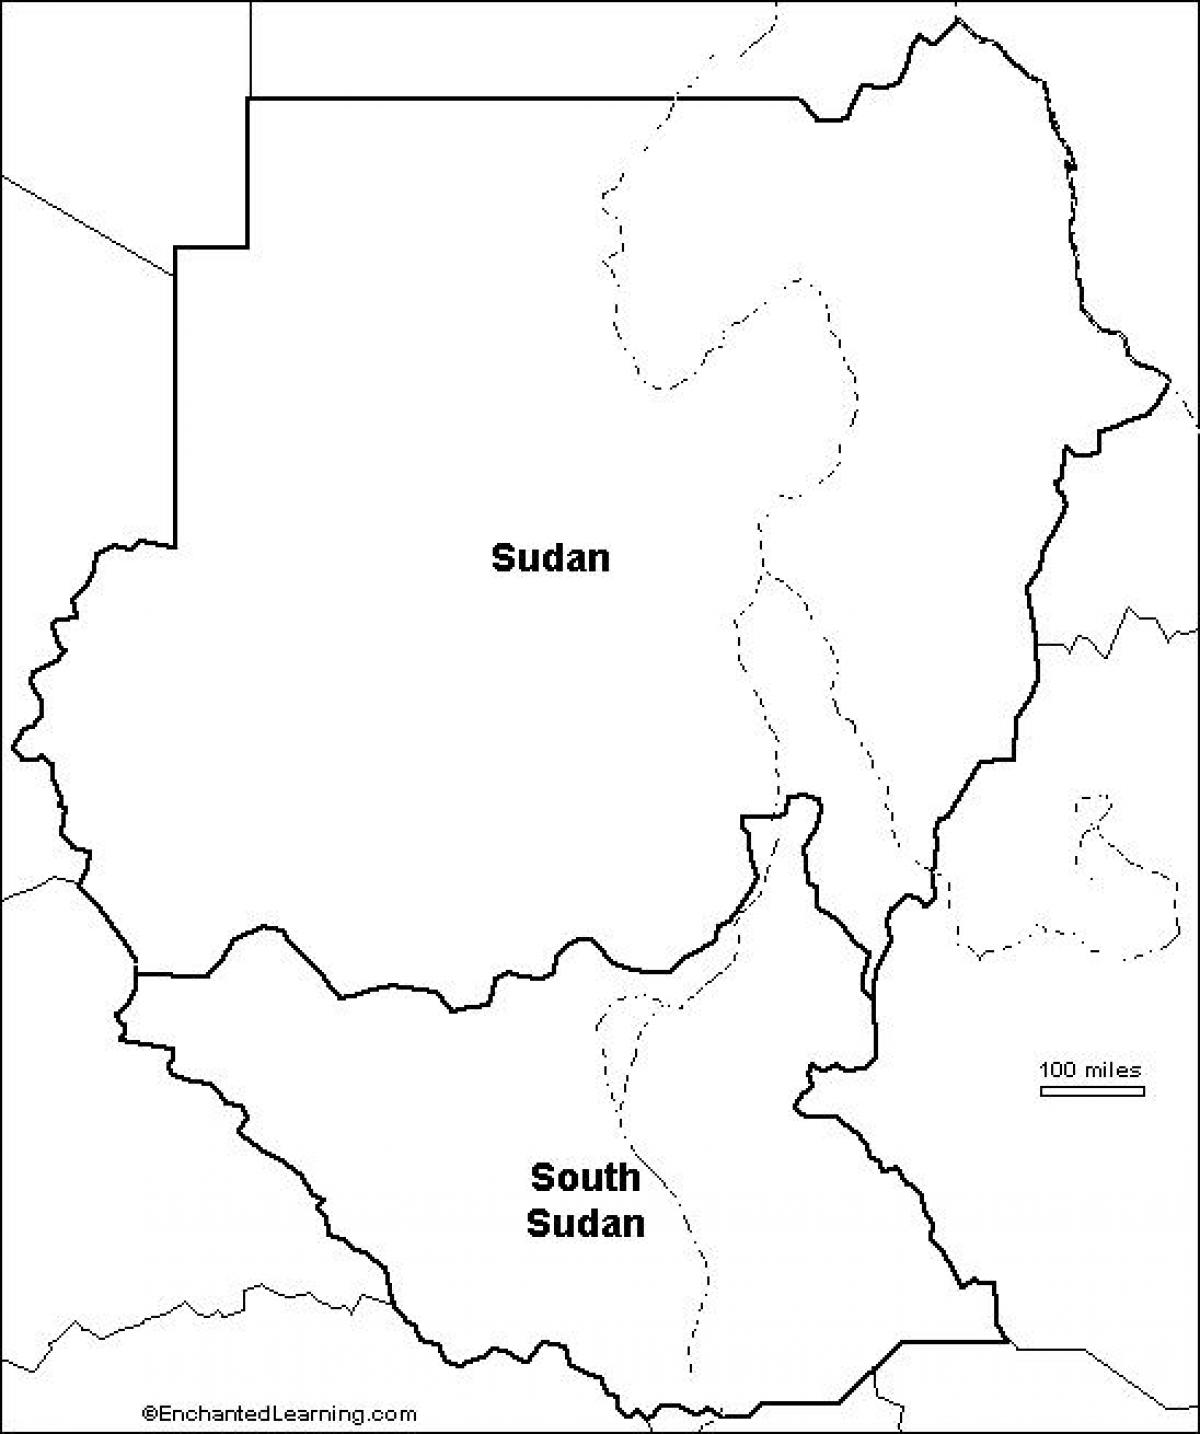 Kat jeyografik nan Soudan vid